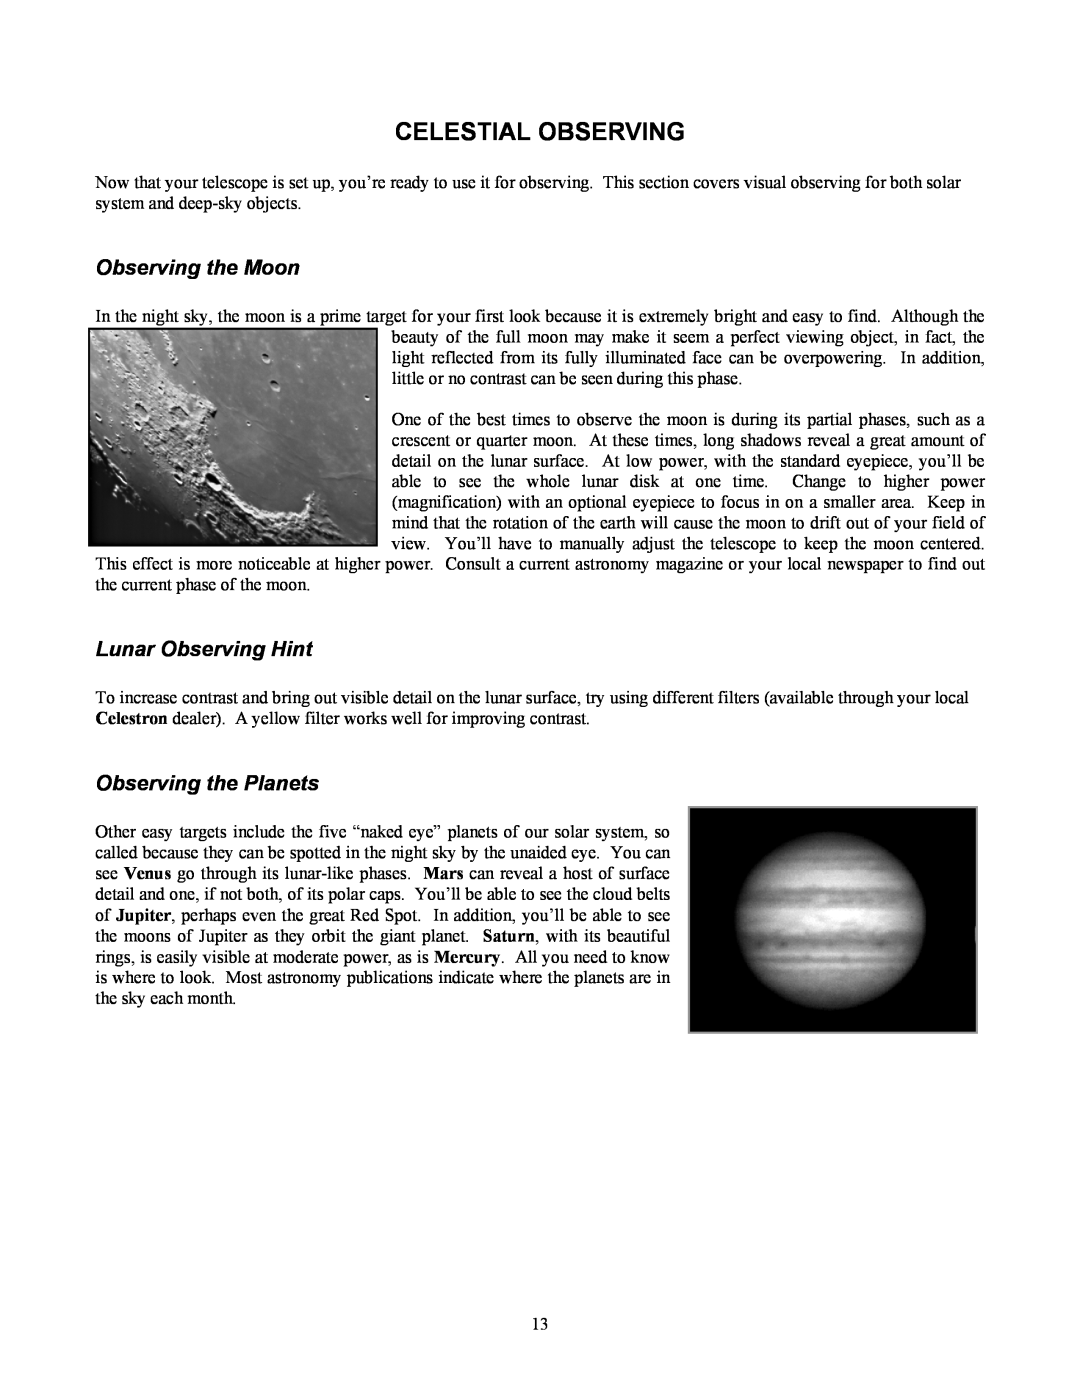 Celestron 80 manual Celestial Observing, Observing the Moon, Lunar Observing Hint, Observing the Planets 